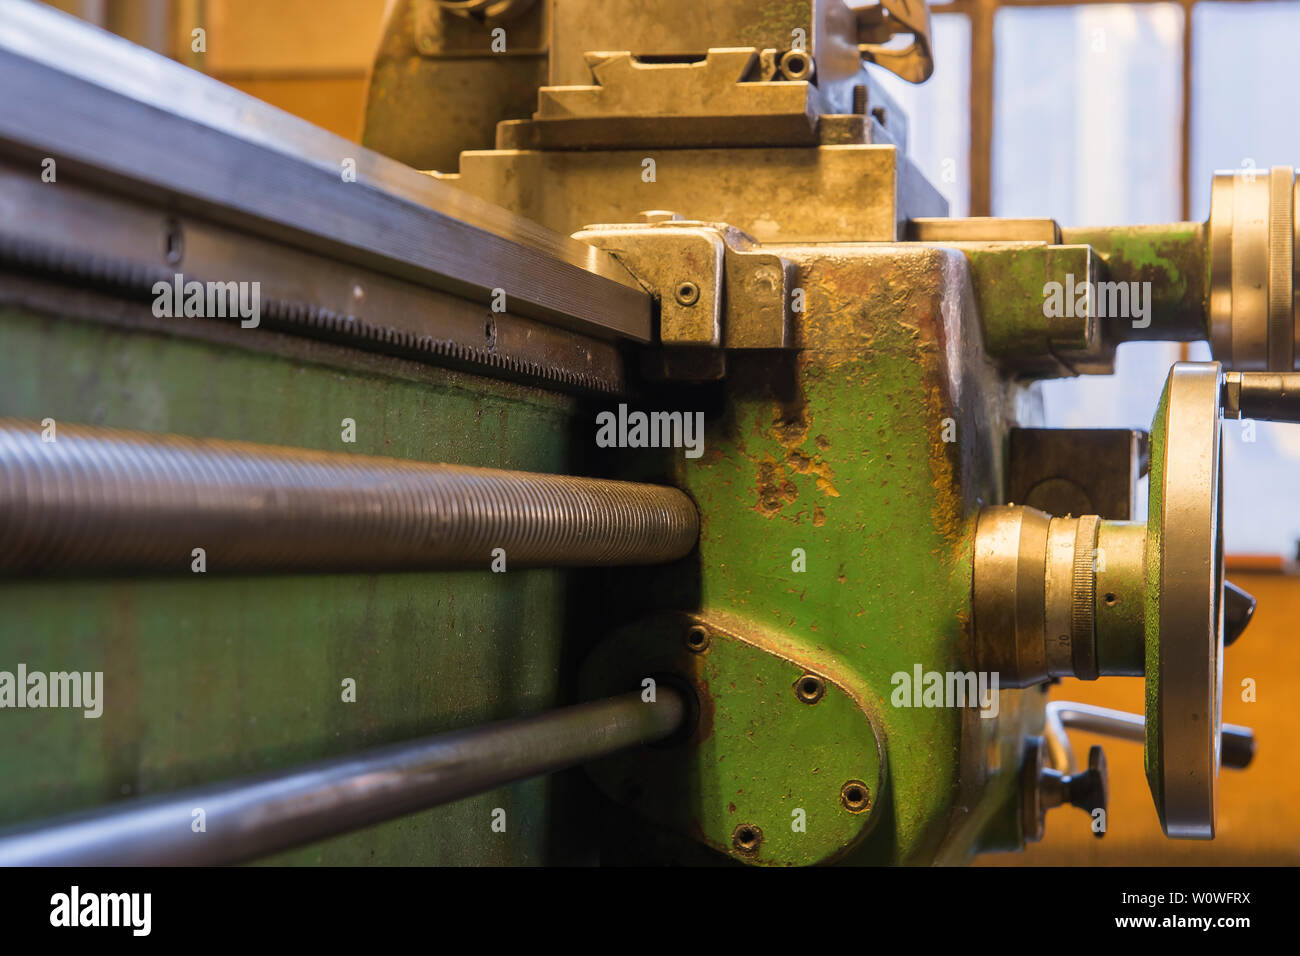 Detailaufnahme von einer Drehmaschine, Stock Photo